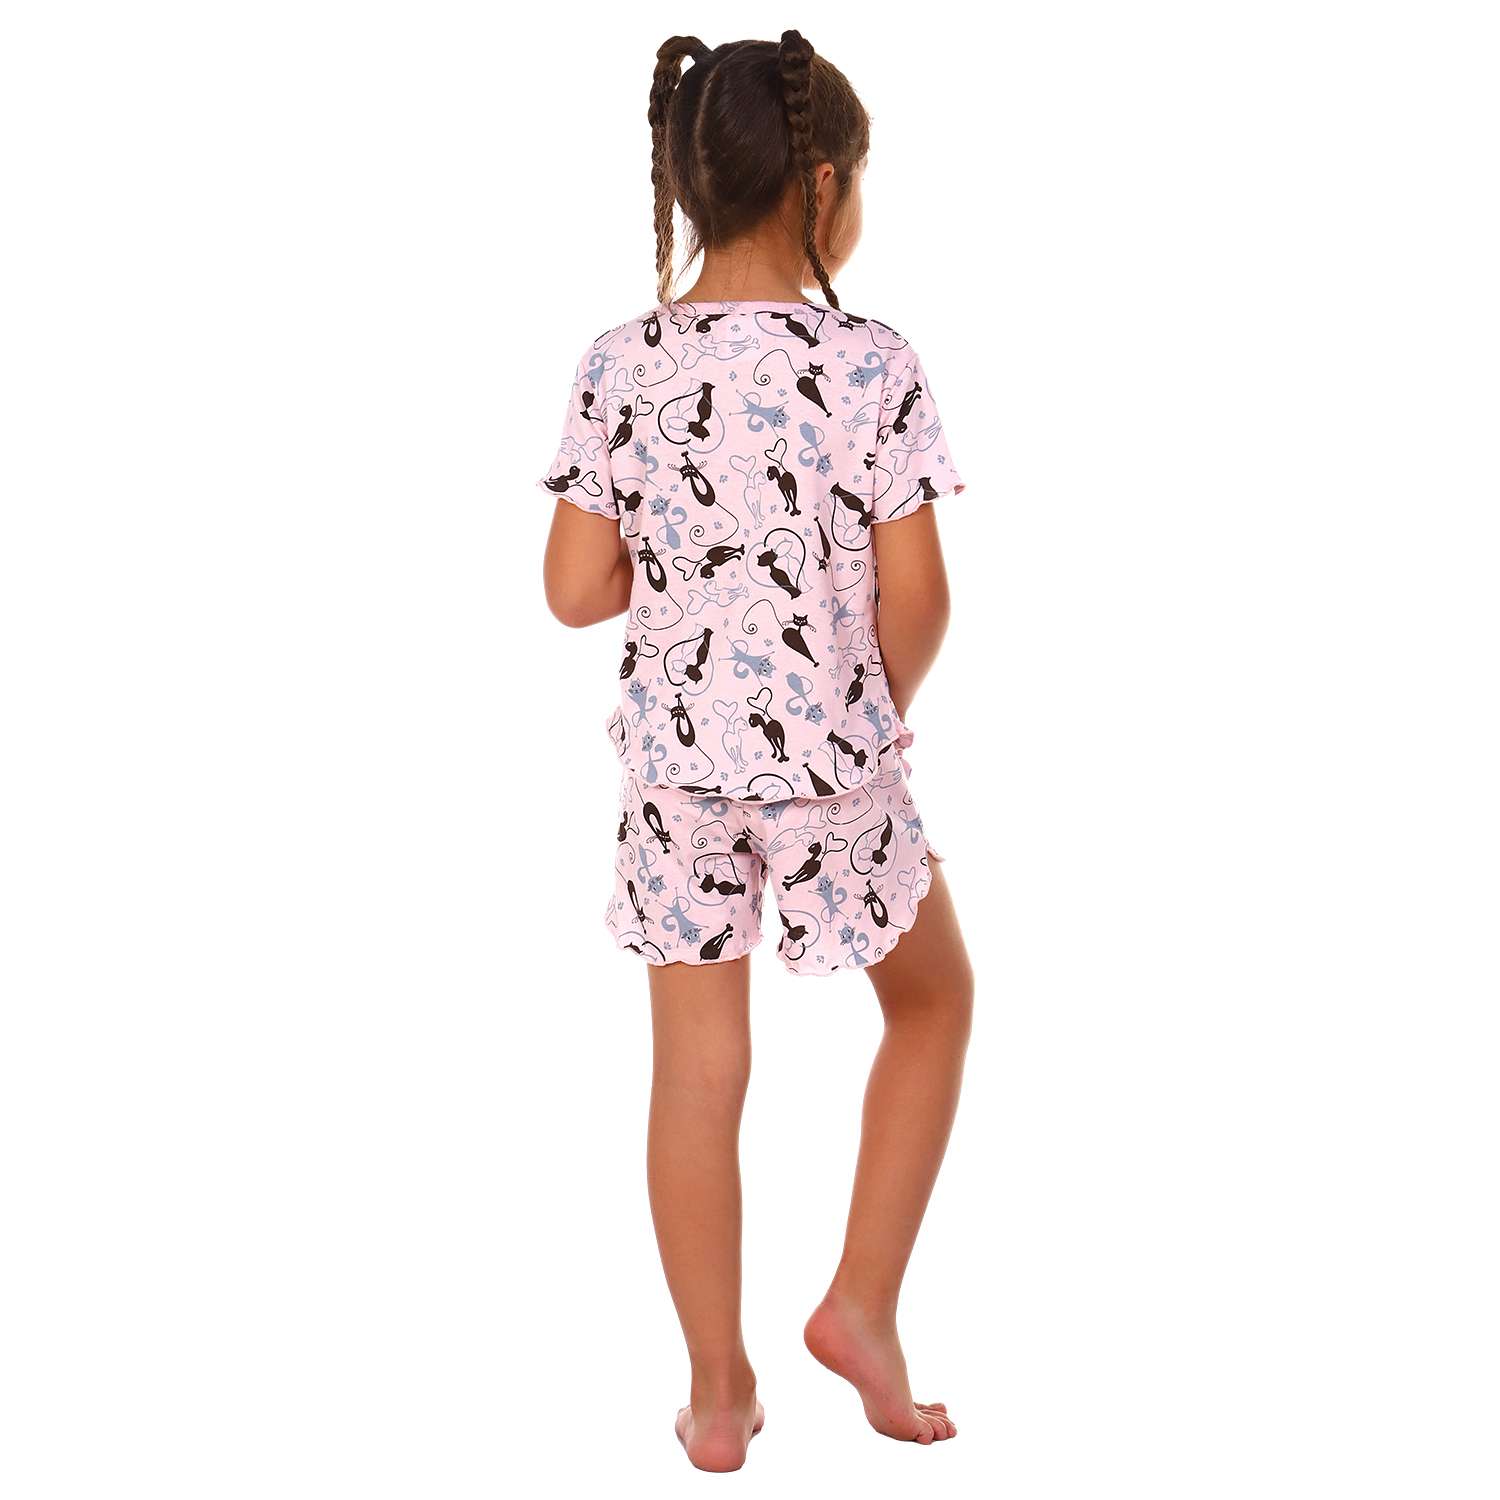 Пижама Детская Одежда 0410КД2/розовый2 - фото 4